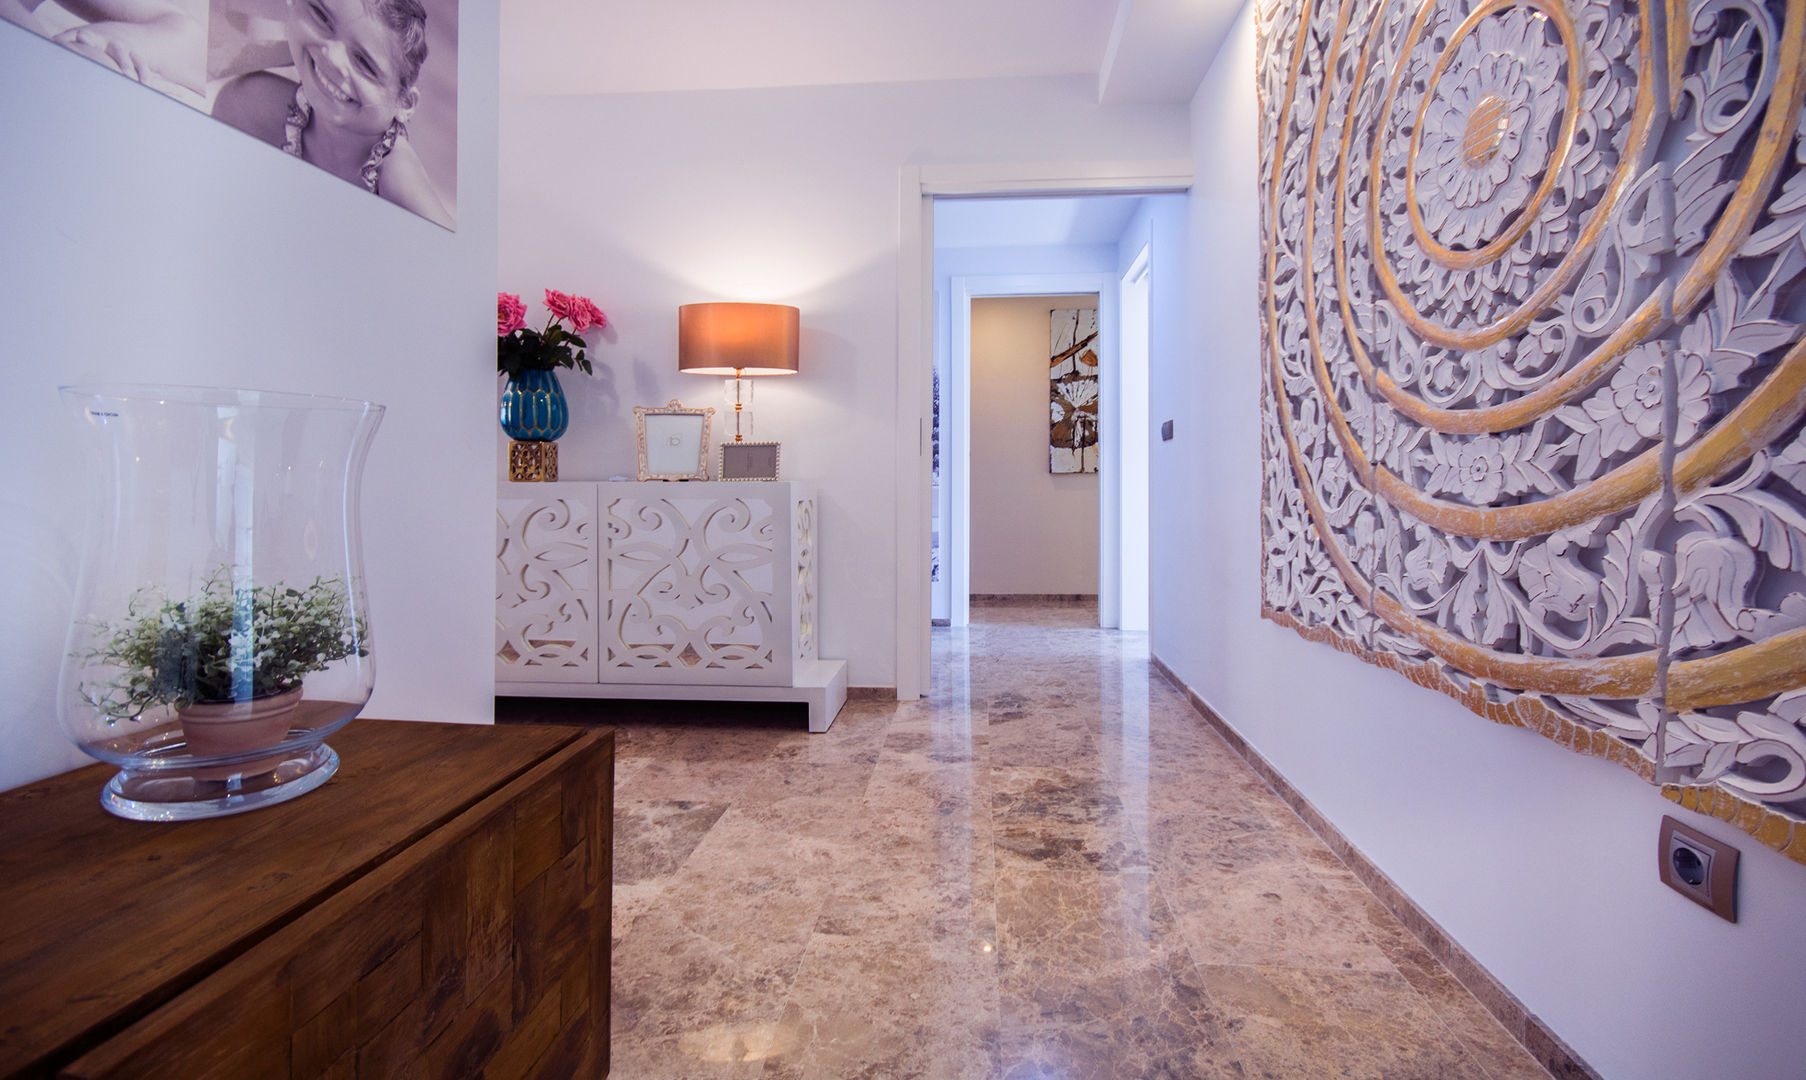 Reforma "LLave en mano" en Córdoba, Apersonal Apersonal Corredores, halls e escadas mediterrâneos